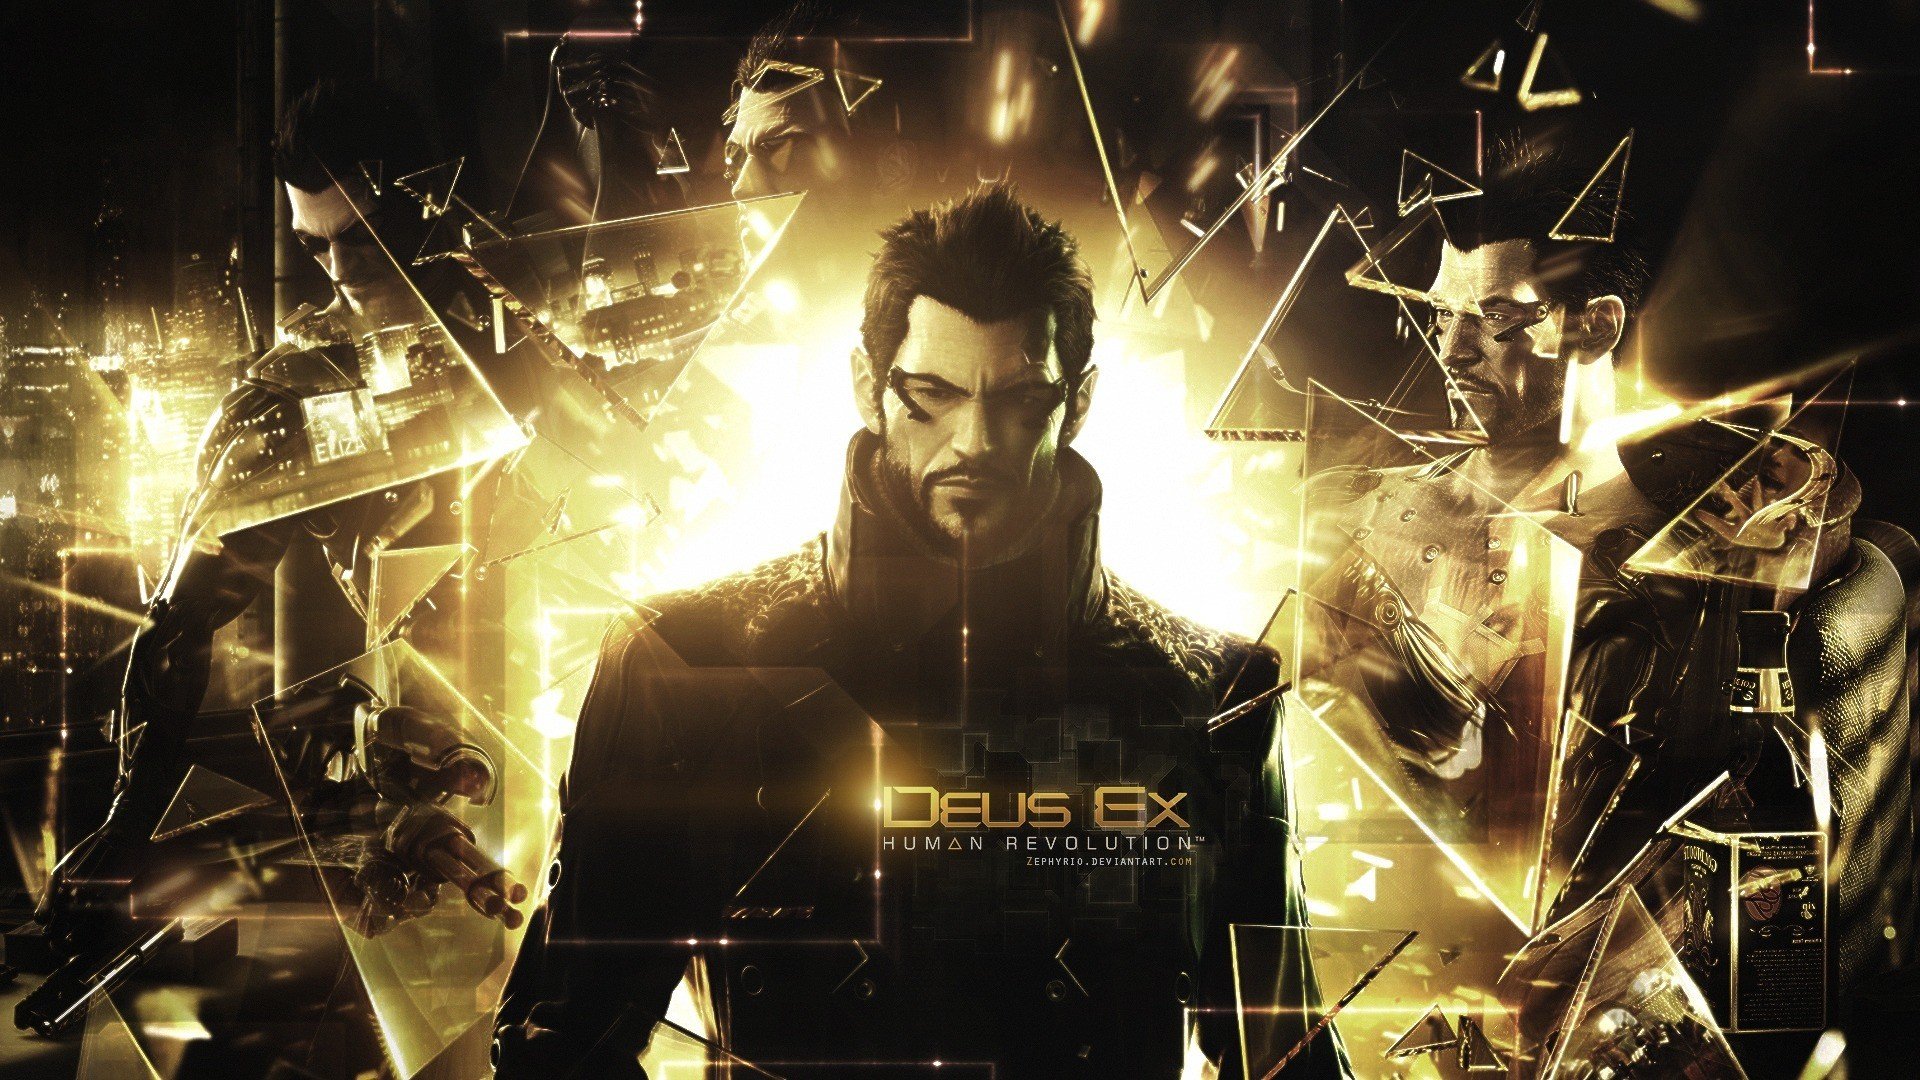 Deus Ex: Human Revolution, Video games Wallpaper